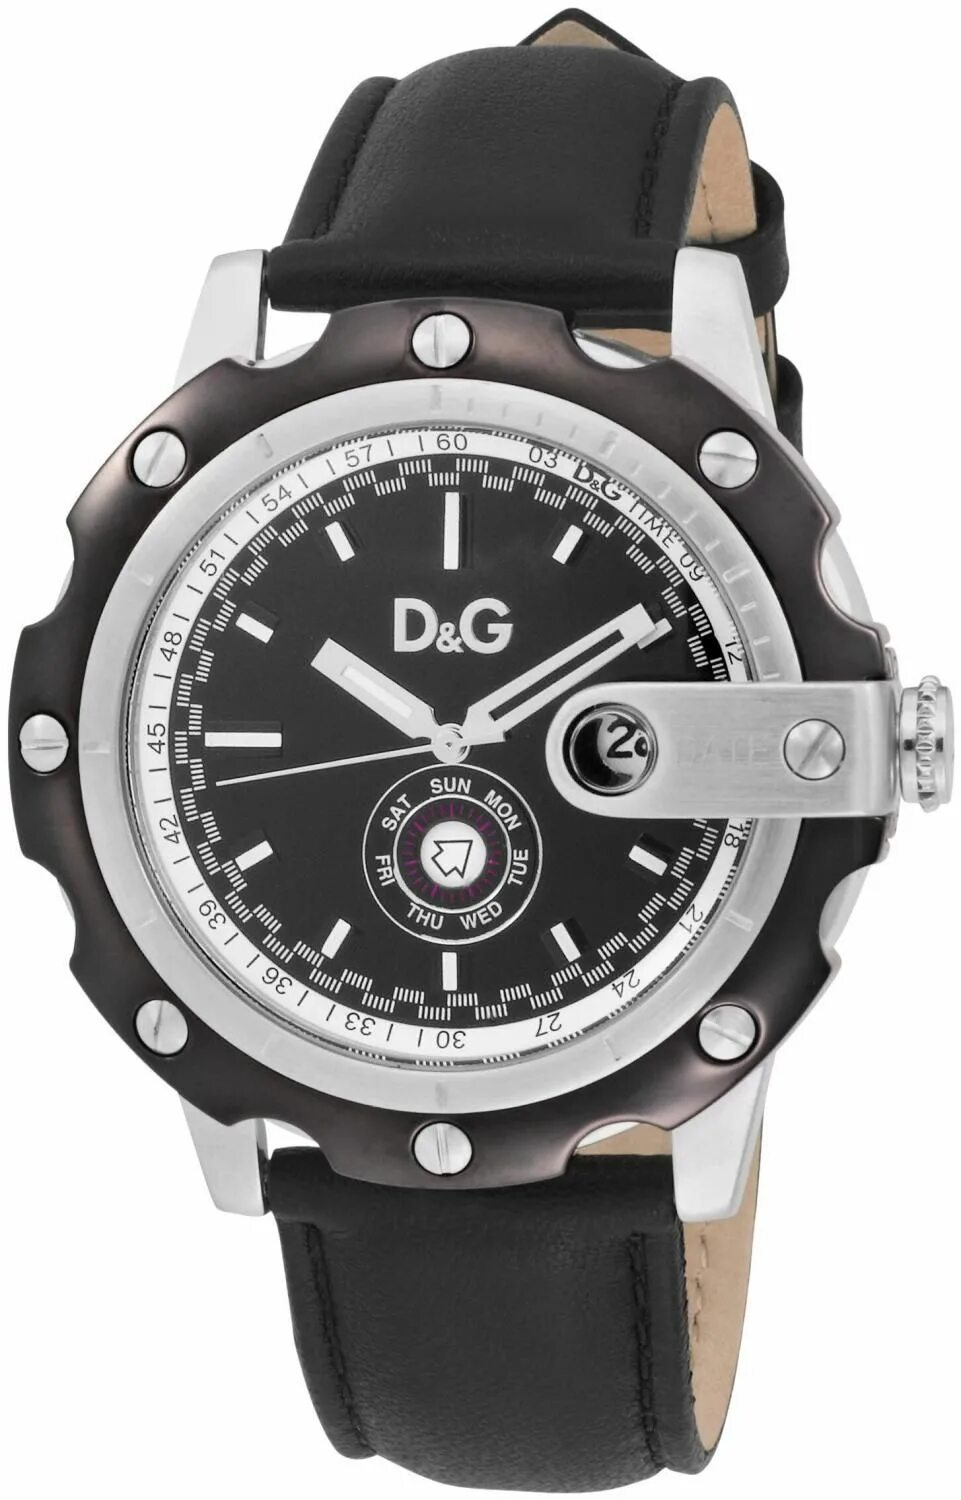 Часы dolce. Часы Дольче Габбана. Часы d&g dw0243. Наручные часы Dolce & Gabbana DG-dw0573. Часы Дольче Габбана мужские.